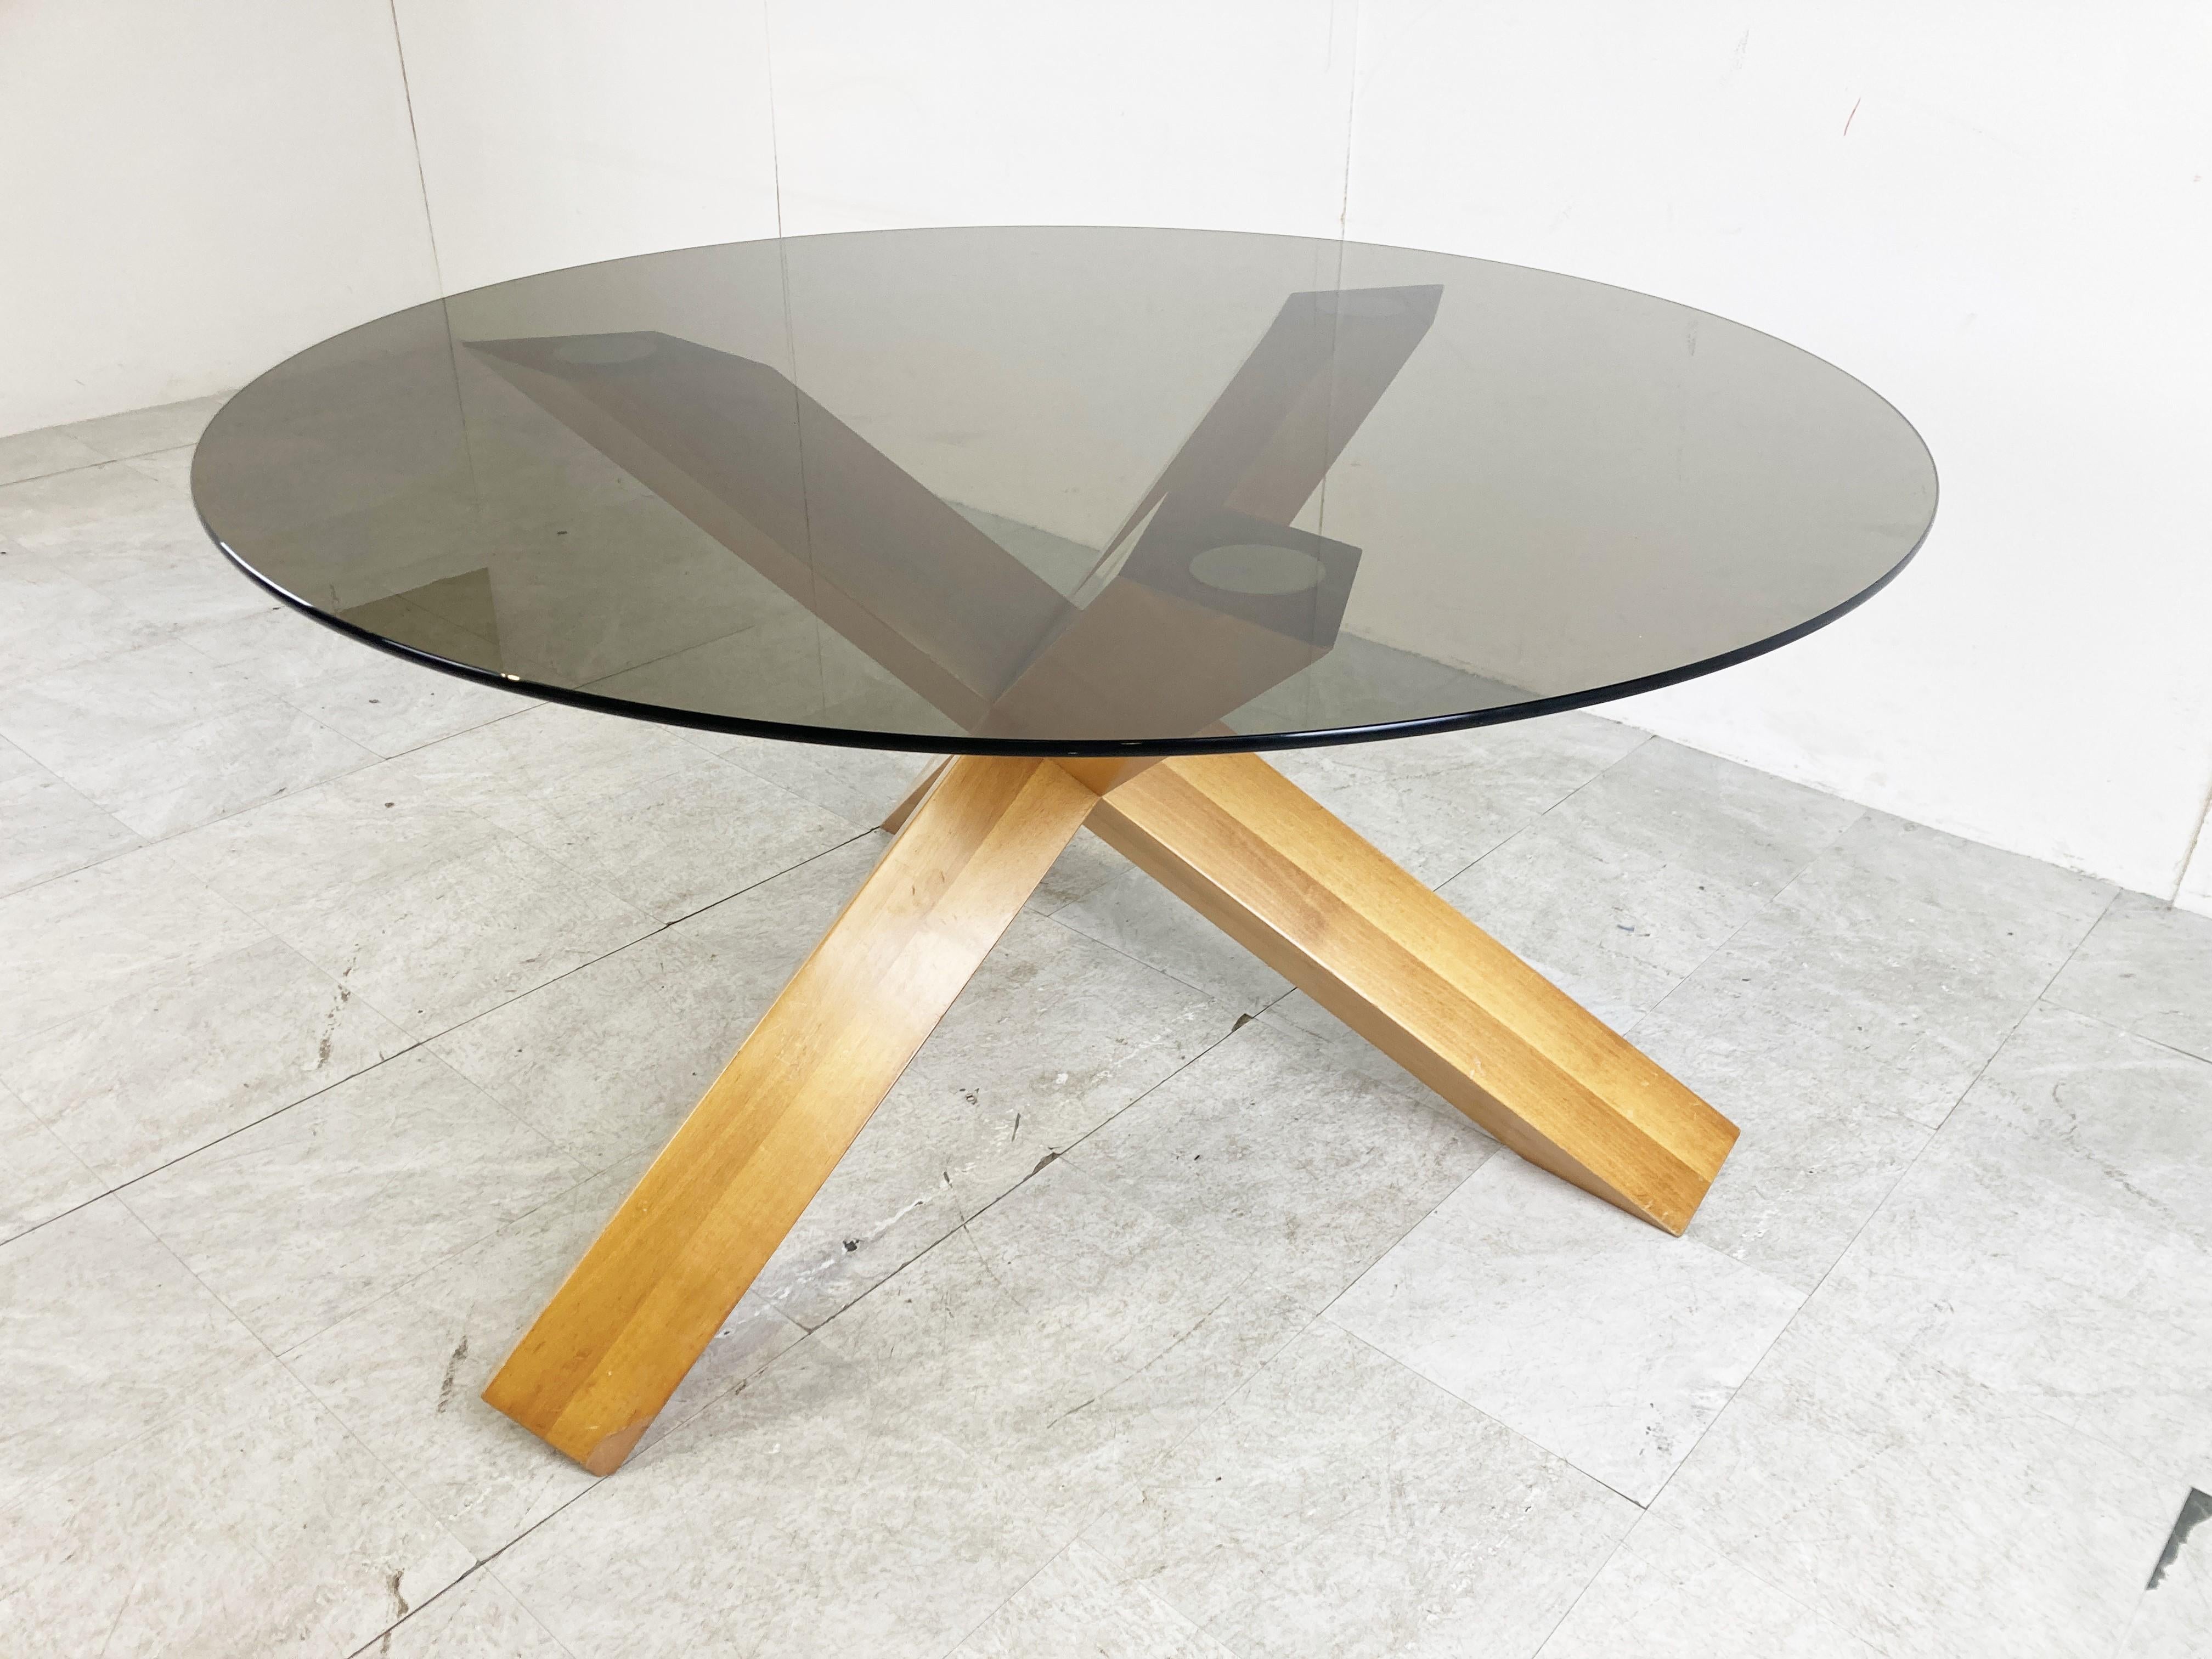 Esstisch aus Eschenholz aus der Mitte des Jahrhunderts von Mario Bellini für Cassina.

Der Tisch hat einen markanten Dreibeinfuß aus massivem Eschenholz und eine Tischplatte aus Rauchglas.

Der von Cassina hergestellte Designklassiker stammt aus